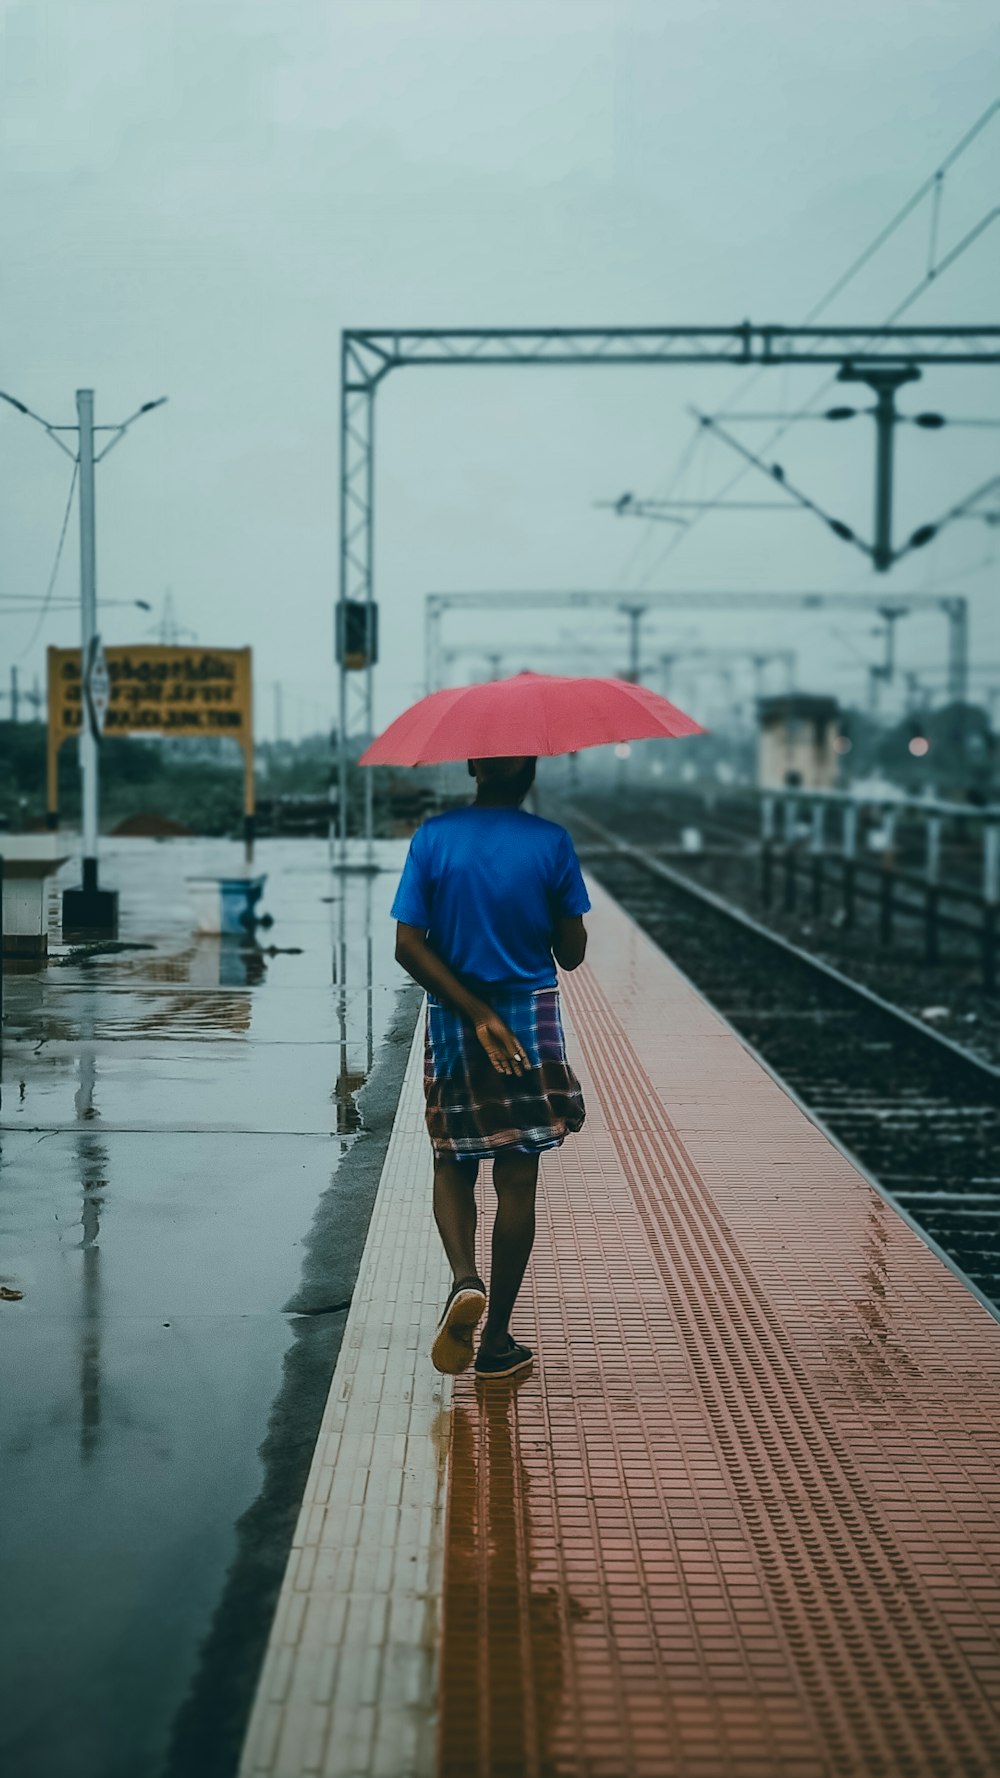 Un hombre caminando por una vía de tren con un paraguas rojo